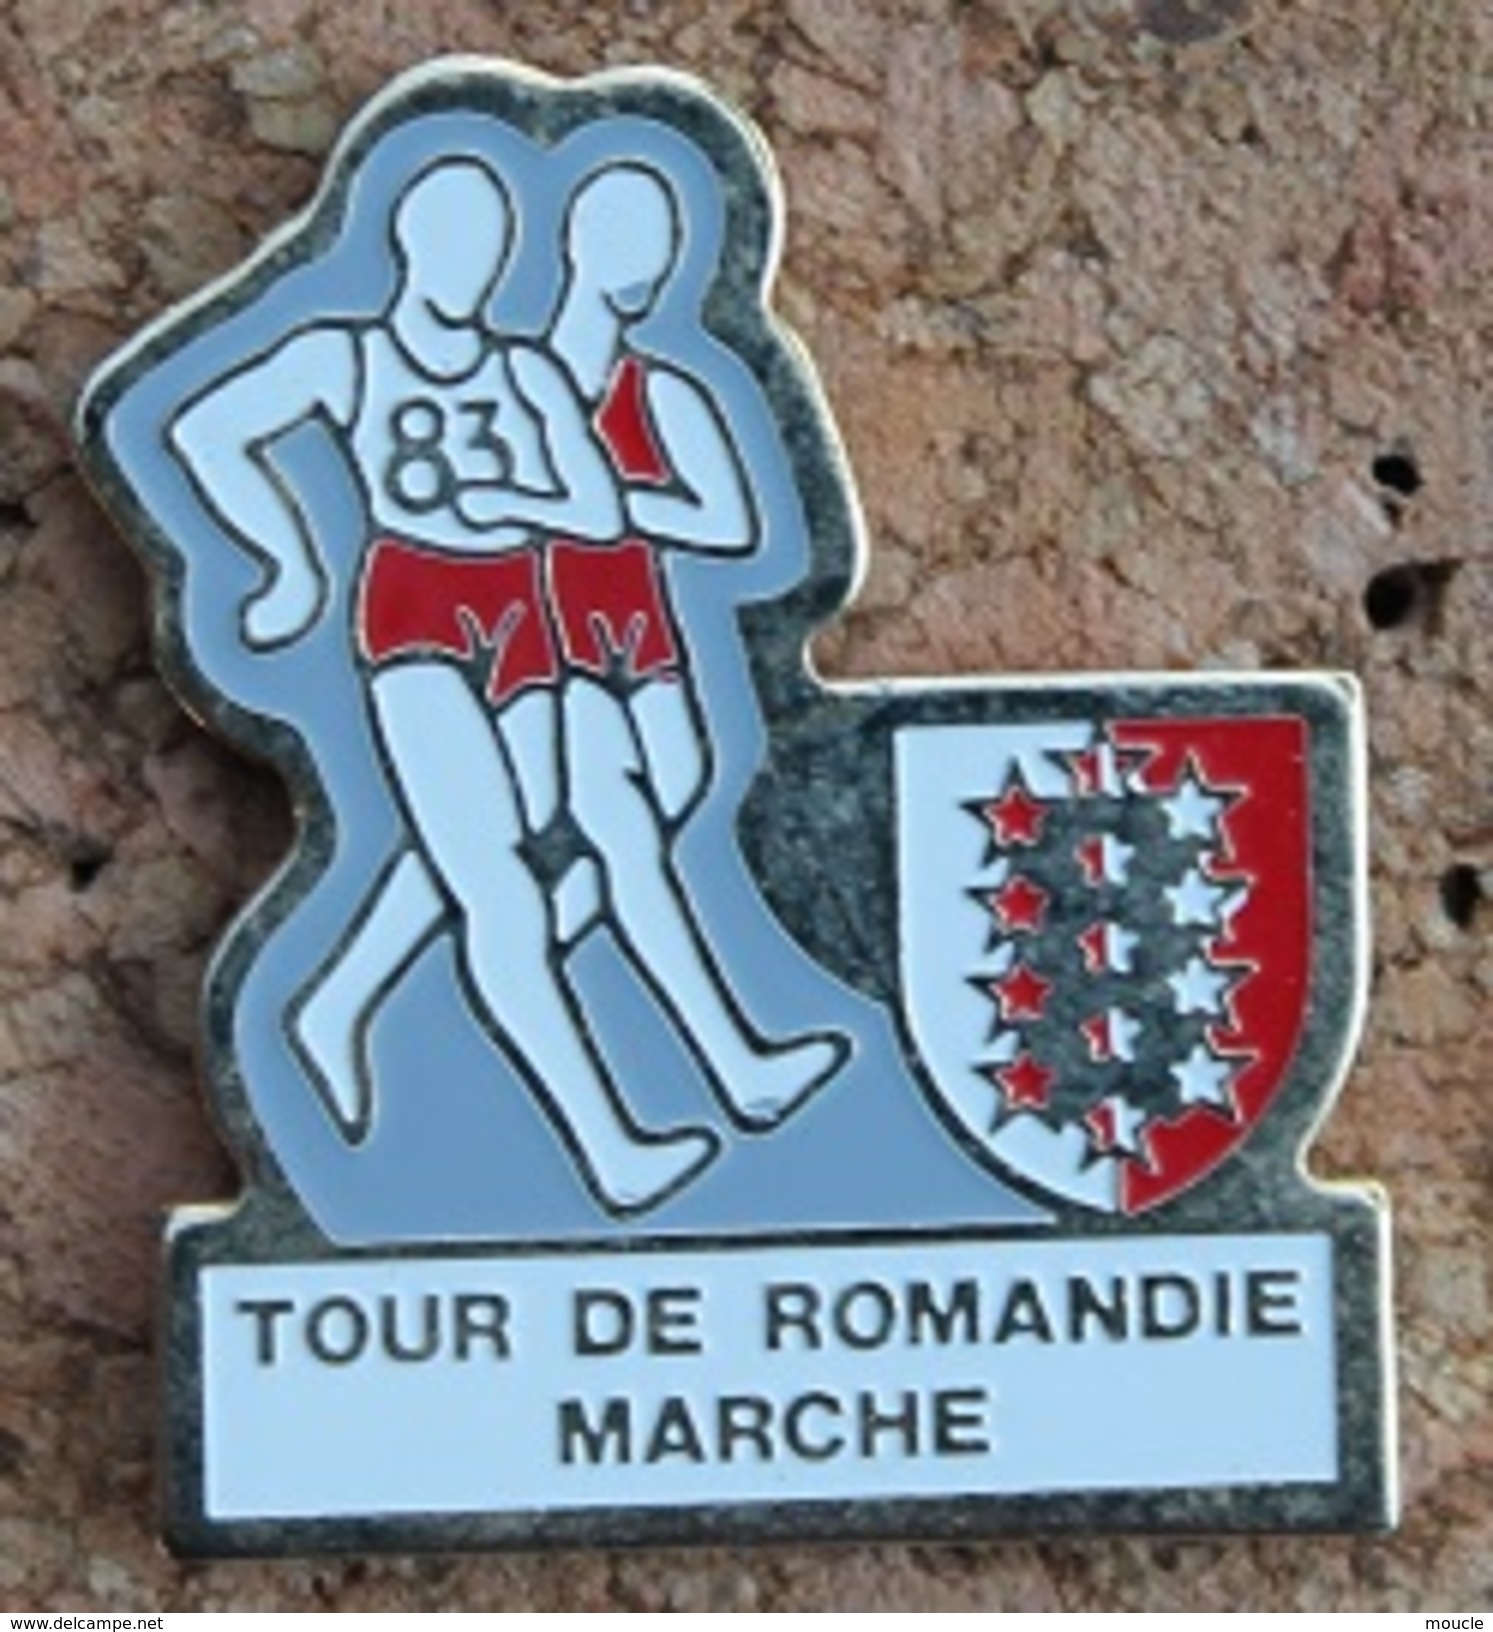 TOUR DE ROMANDIE A LA MARCHE - SUISSE - ETAPE DU CANTON DU VALAIS - MARCHEURS - SCHWEIZ - SVIZZERA - SUIZA  -     (13) - Athletics